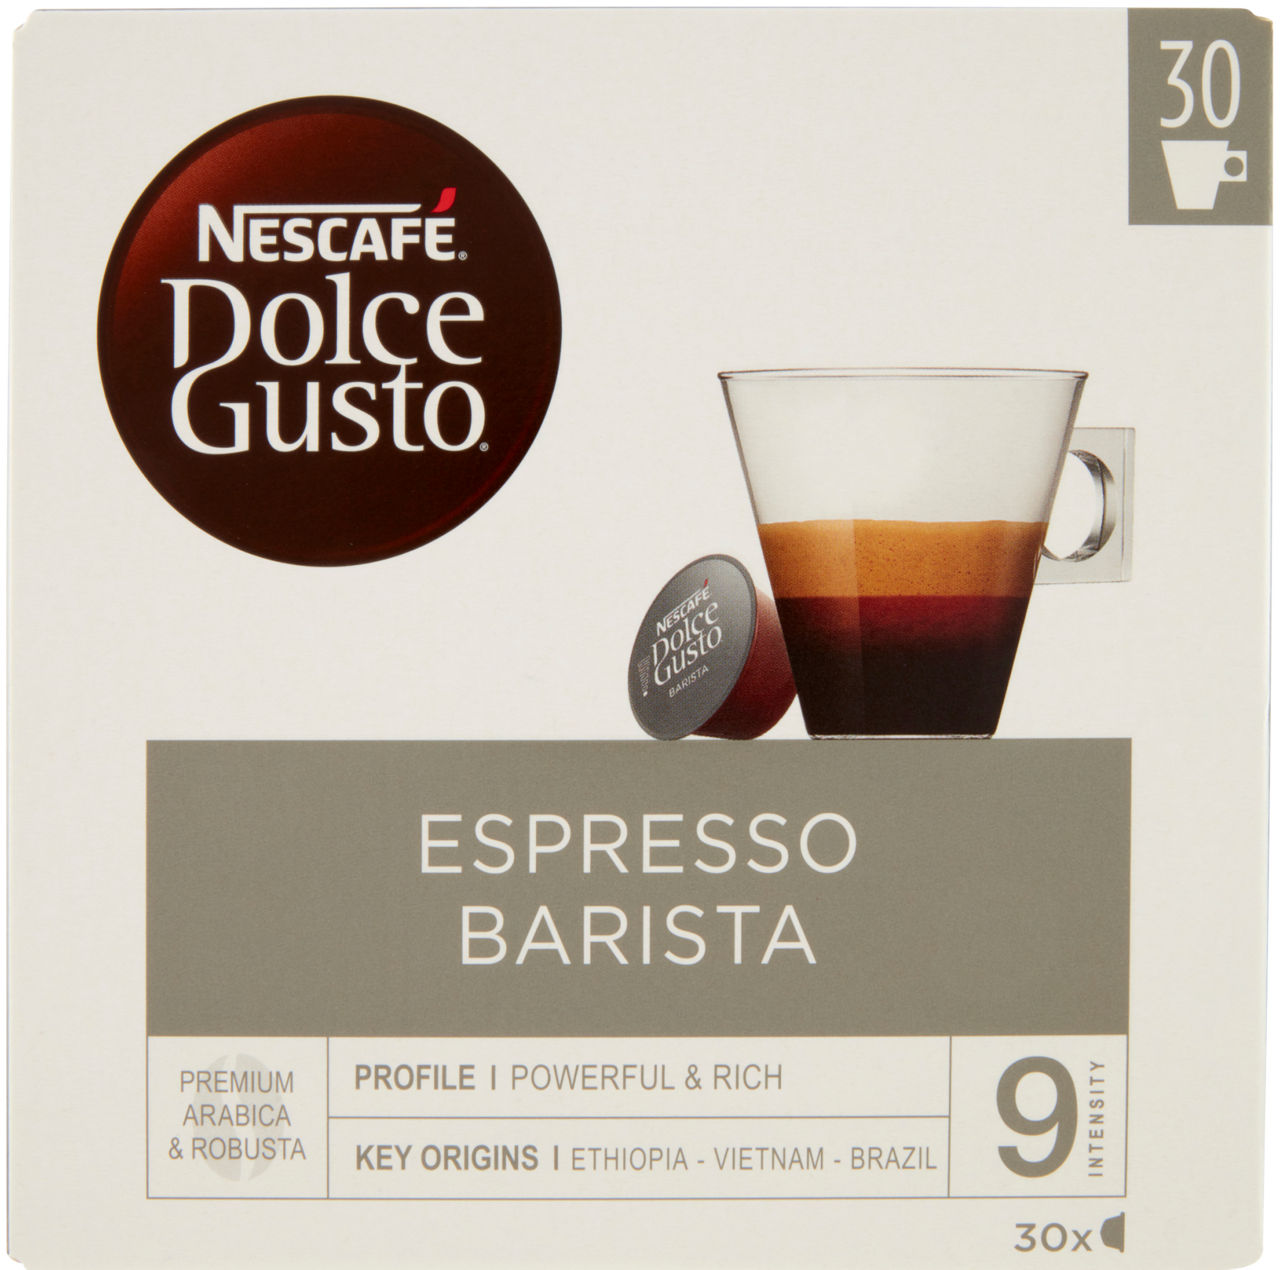 Nescafè dolce gusto espresso barista 30 capsule scatola g 210